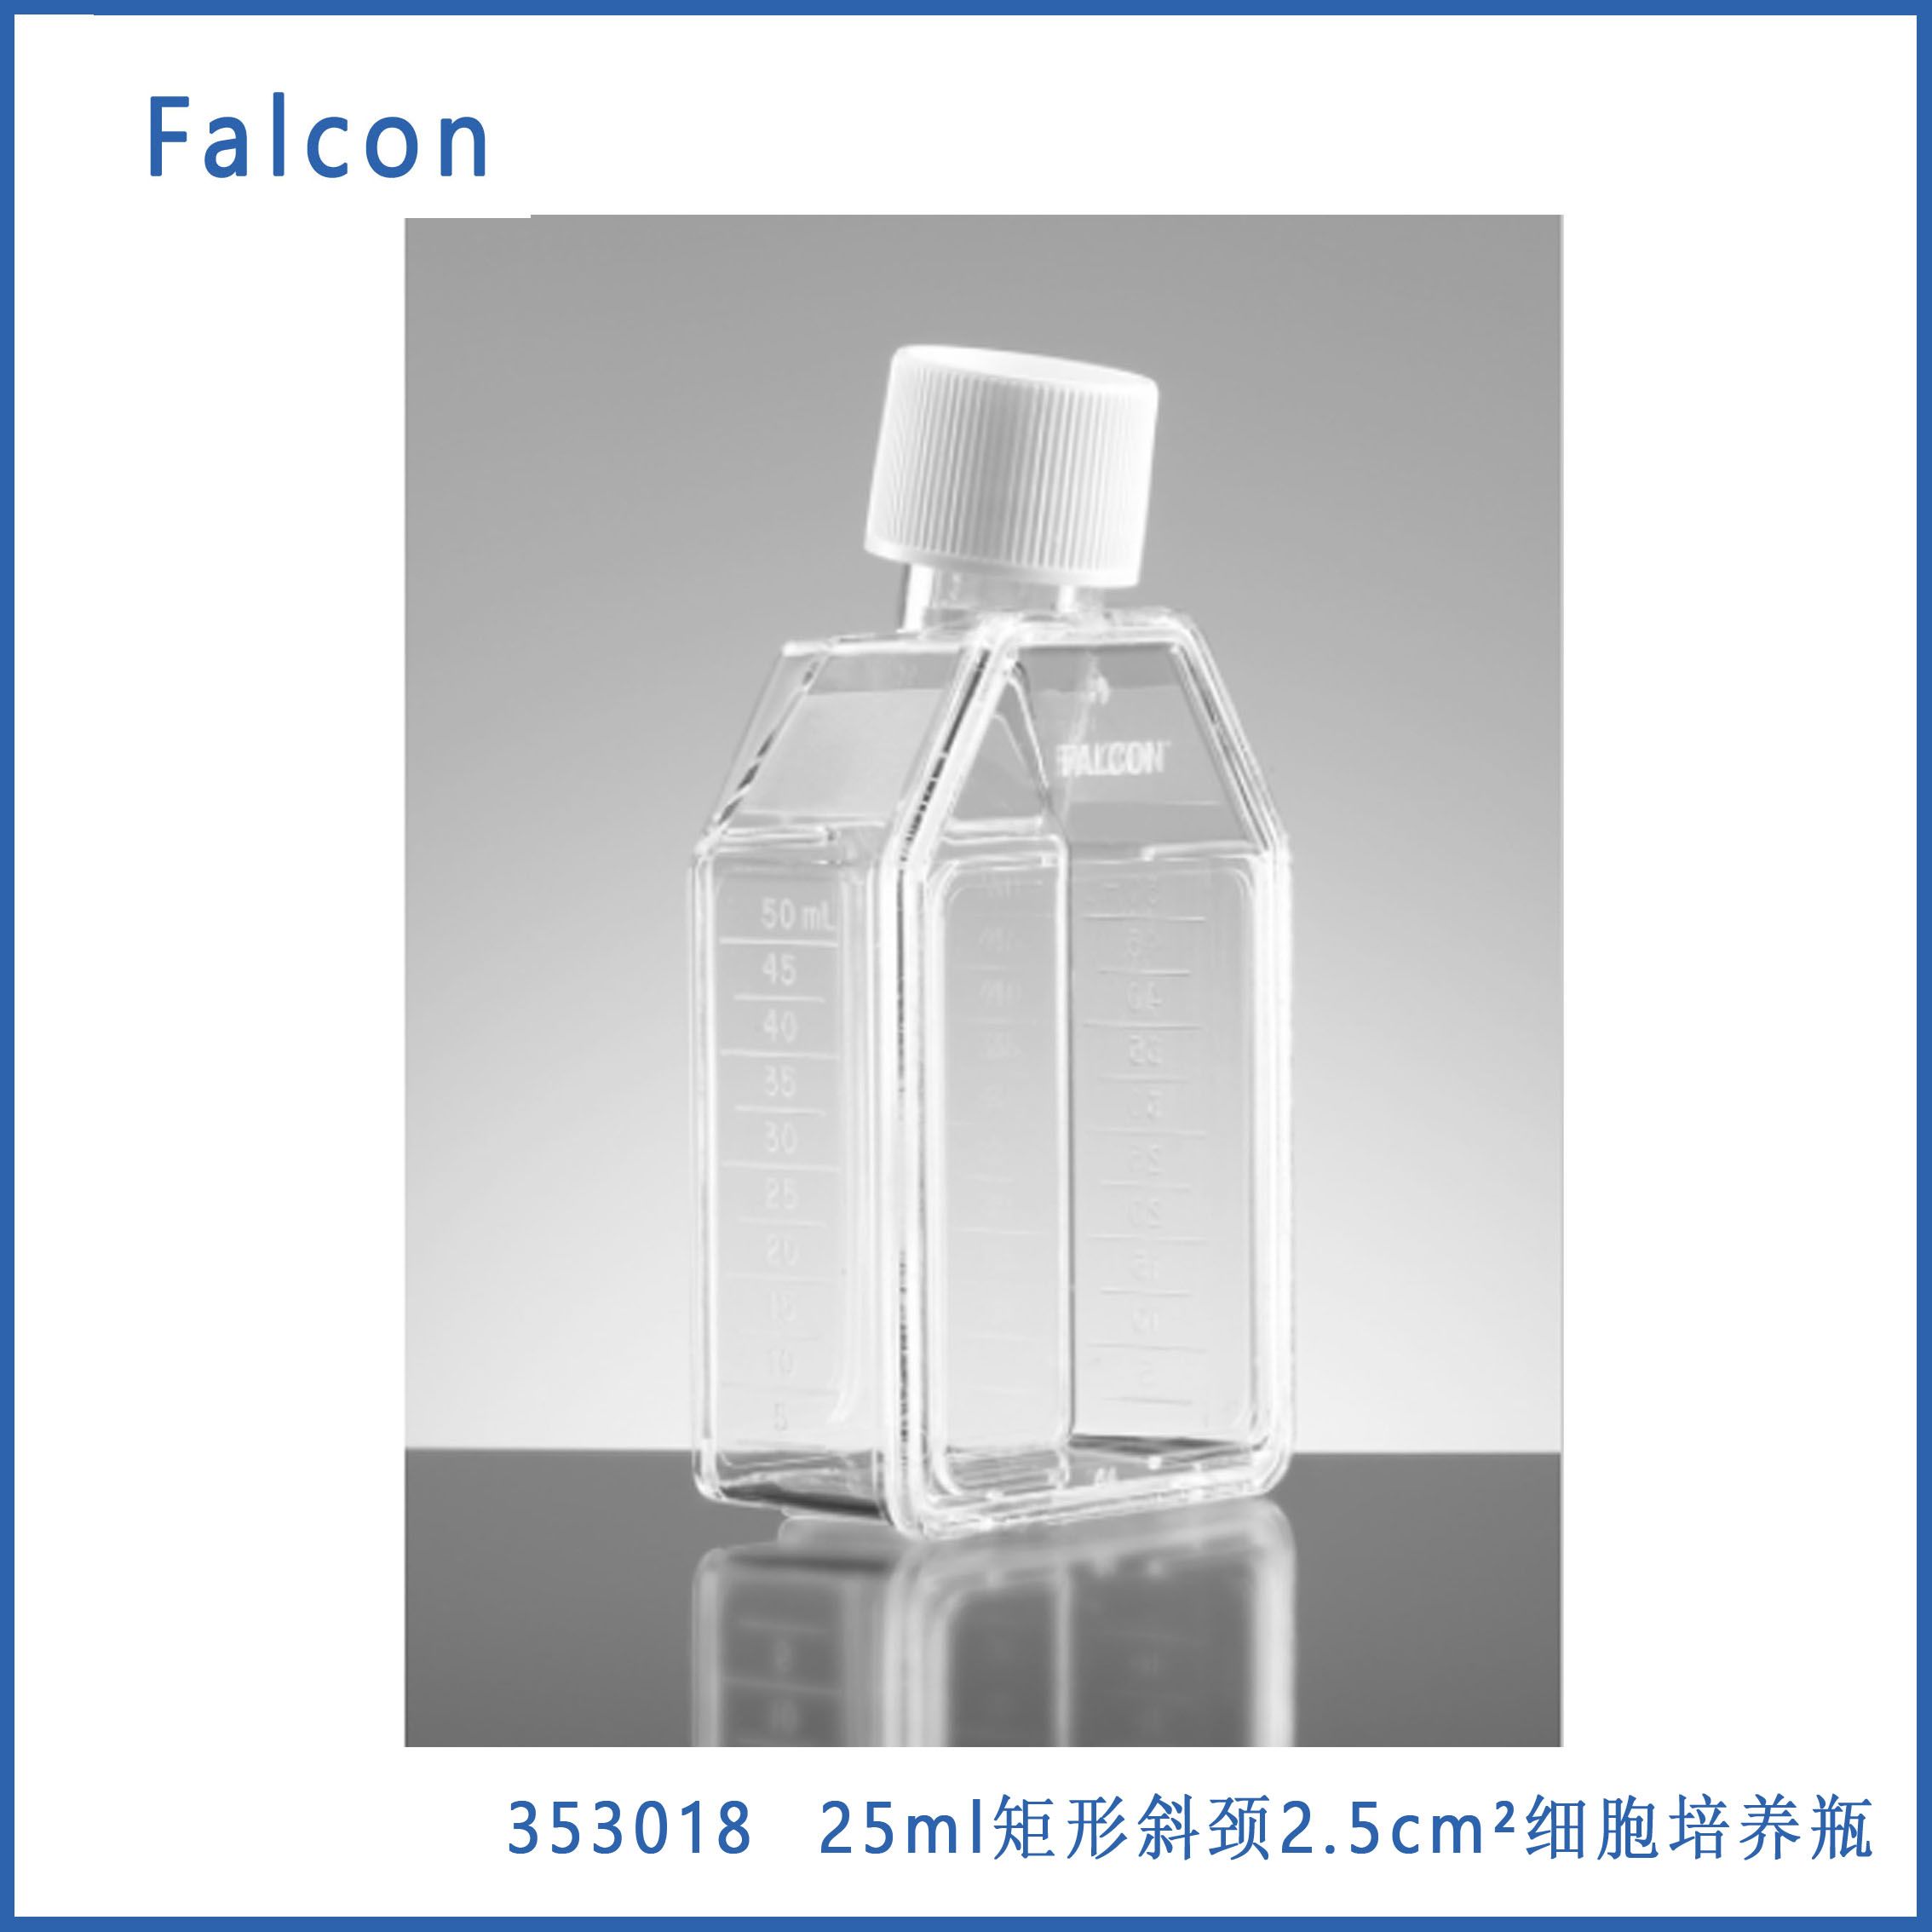 细胞培养瓶12.5c㎡ 25ml斜颈 密封盖 Faclon 353018 现货